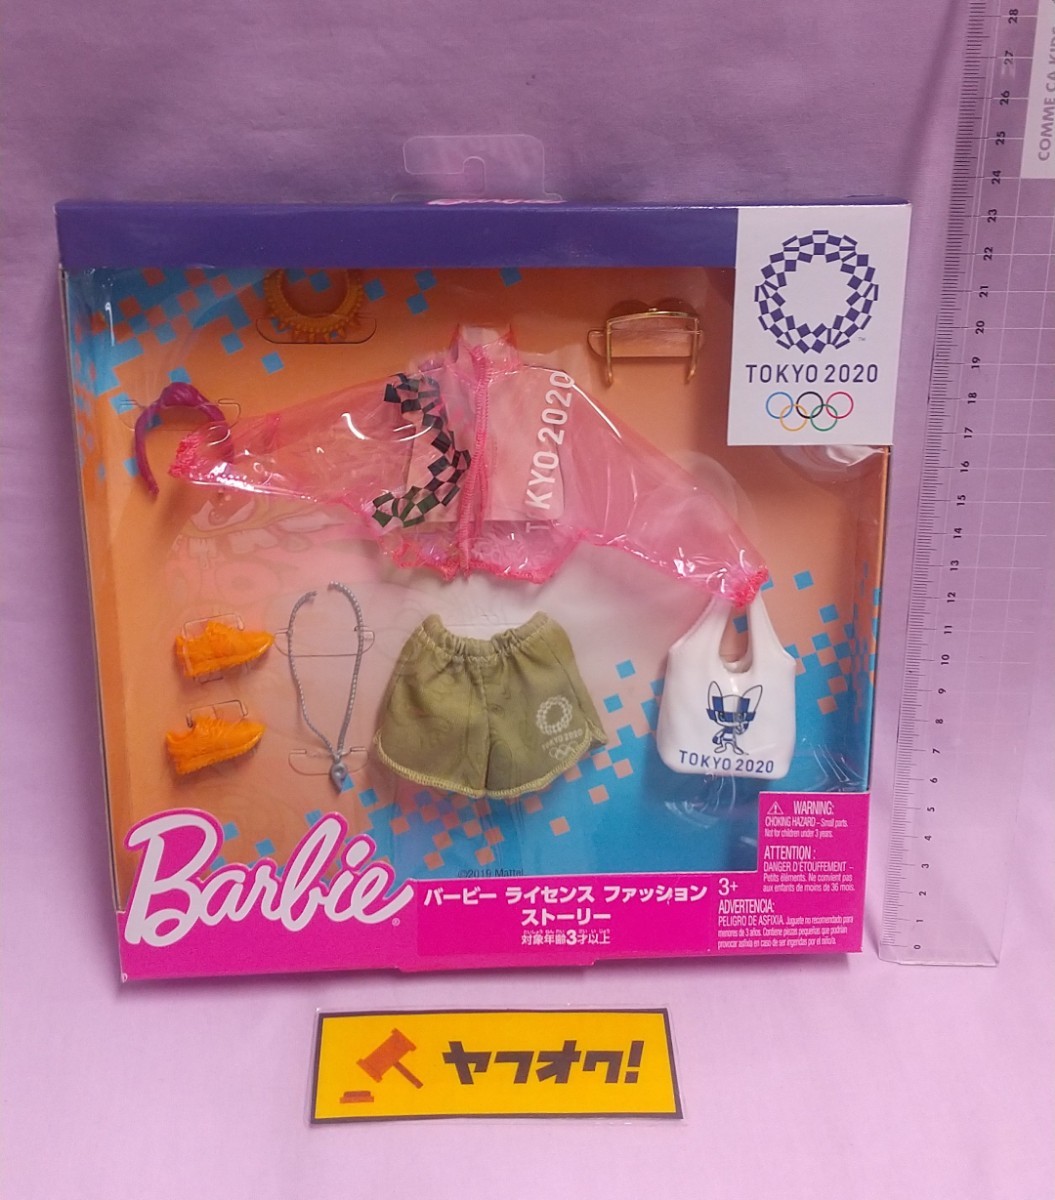 Barbie バービー アウトフィット 服 東京2020 Tokyo2020 オリンピック ライセンスファッションストーリー 限定 人形 フィギュア ドール B